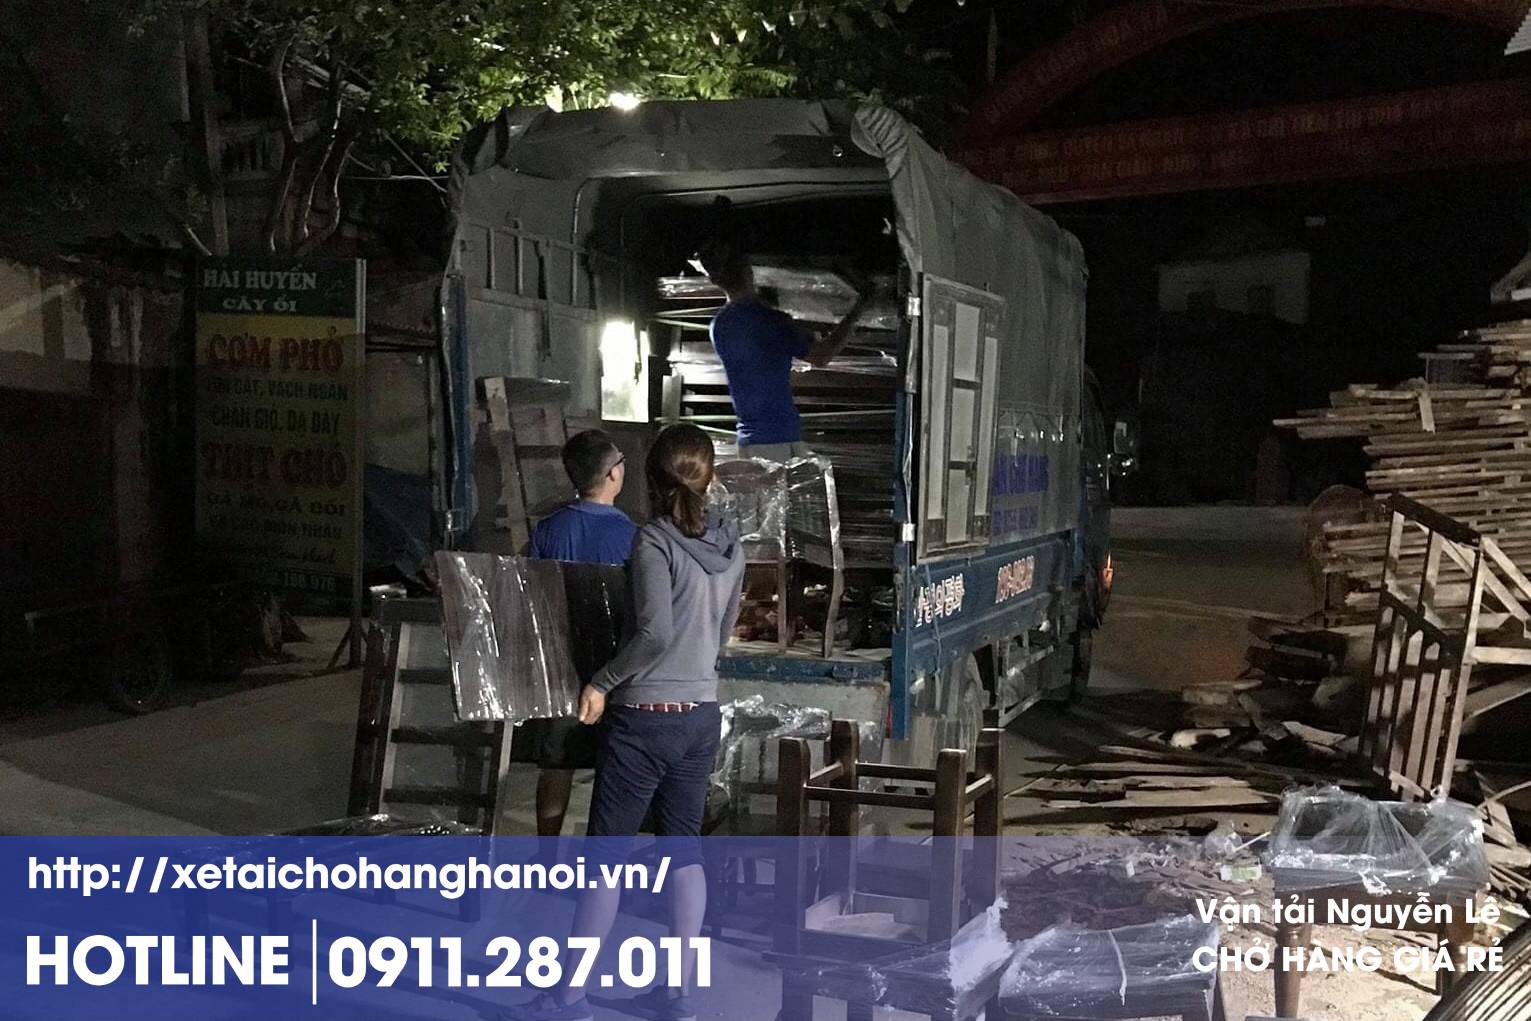 Chở nội thất an toàn giá rẻ ở Hà Nội bằng xe tải